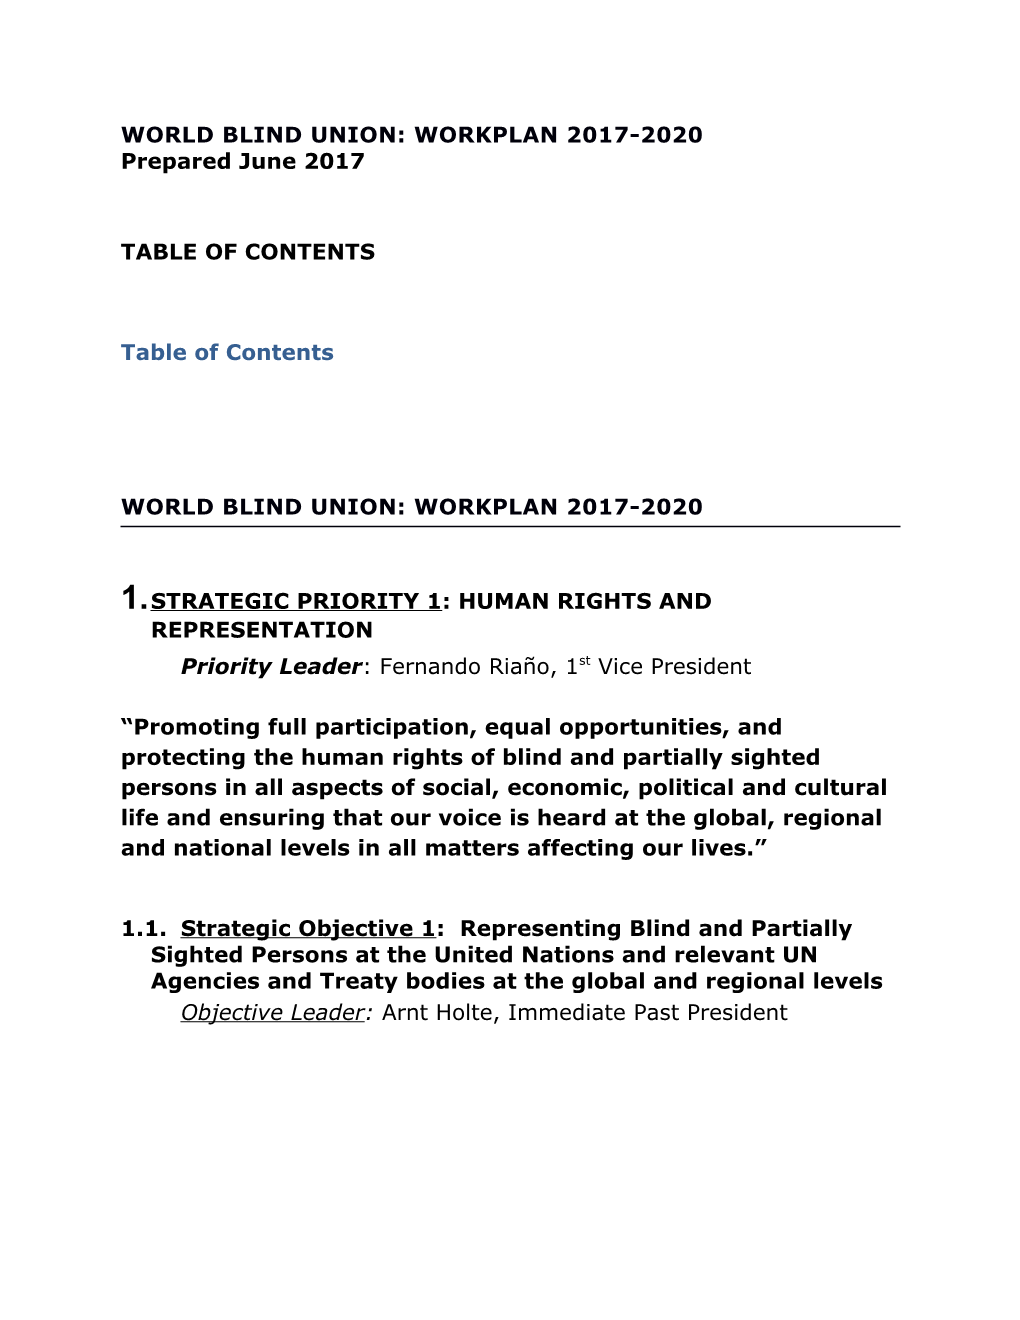 World Blind Union: Workplan 2013-2016